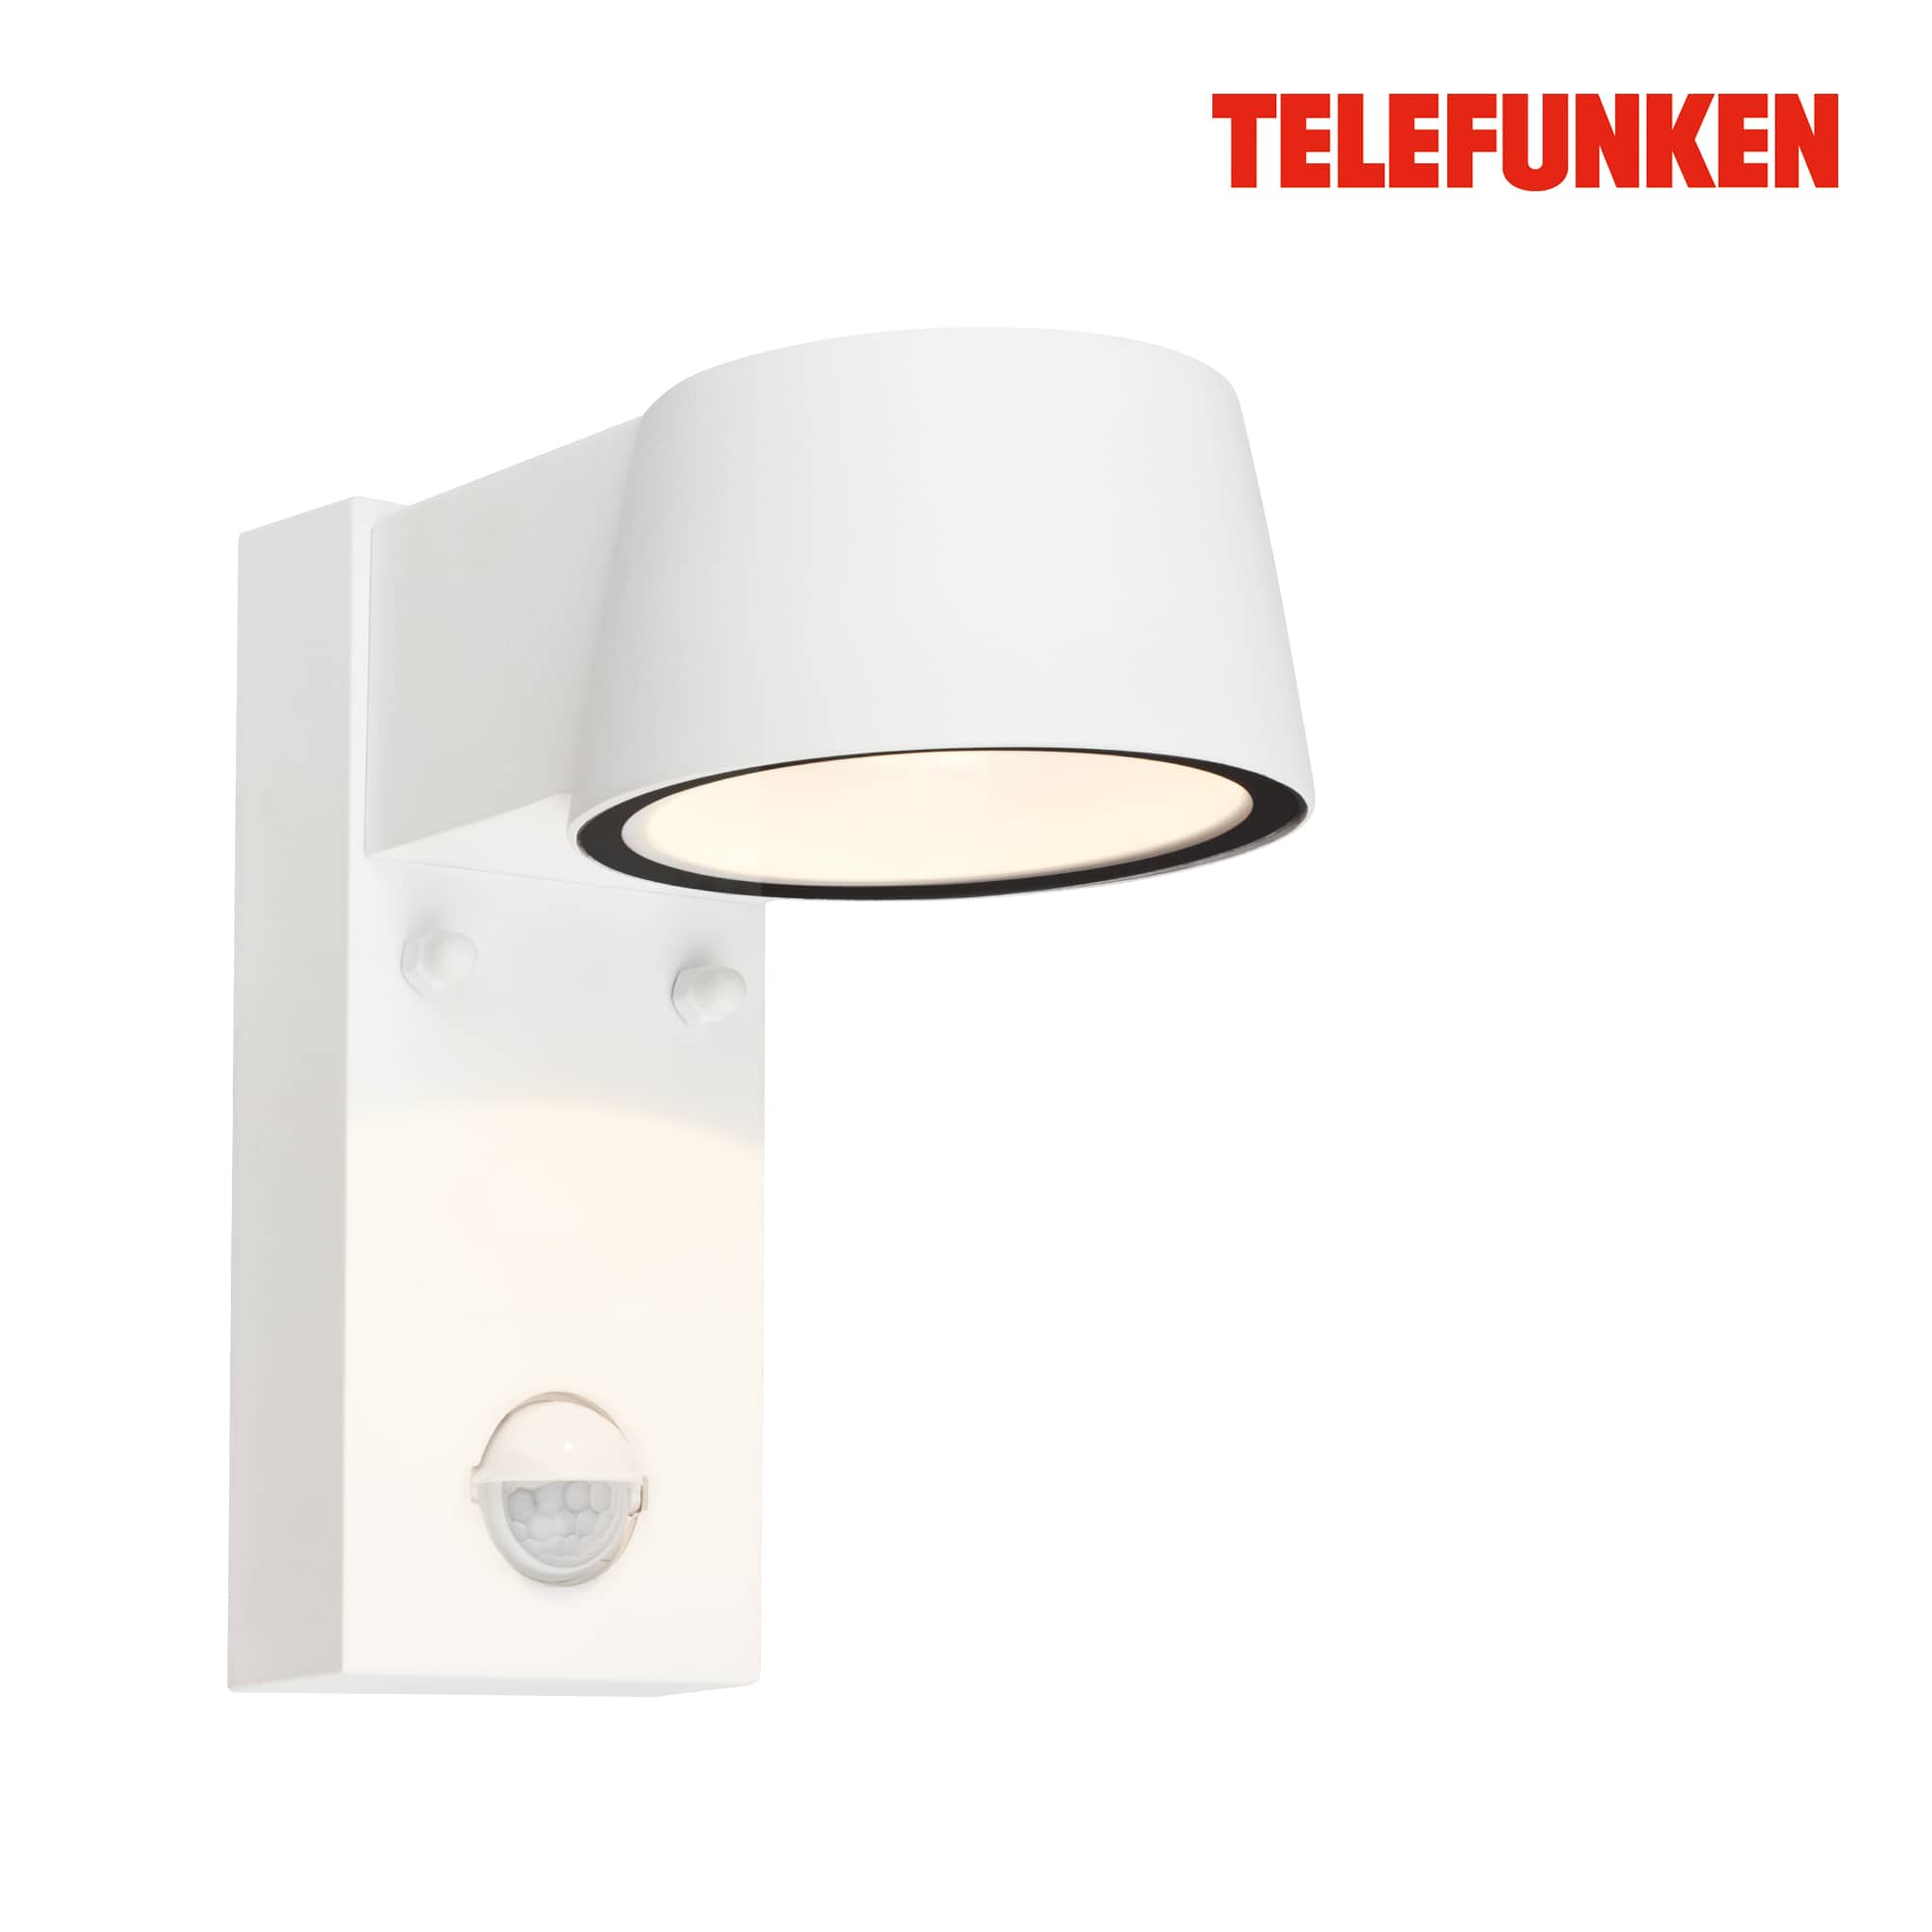 Telefunken LED wall lamp, motion detector, twilight sensor, white